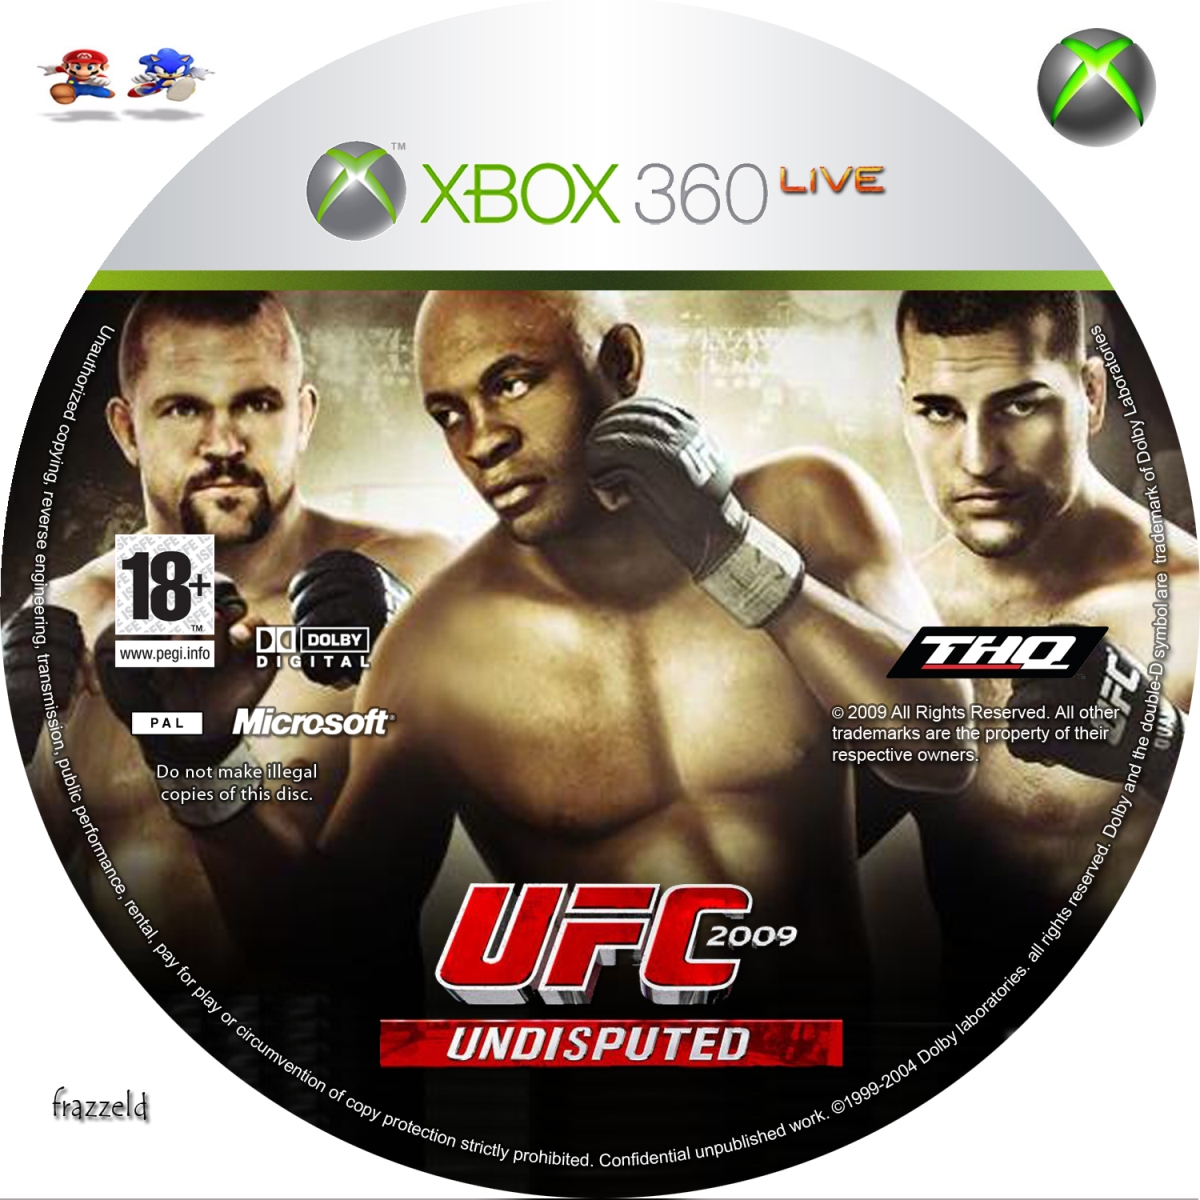 Цены игр на xbox. UFC 2009 Undisputed Xbox 360. UFC 3 Undisputed Xbox 360 диск. Обложка УФС 3 Xbox 360. Диск для Xbox 360 UFC 2.